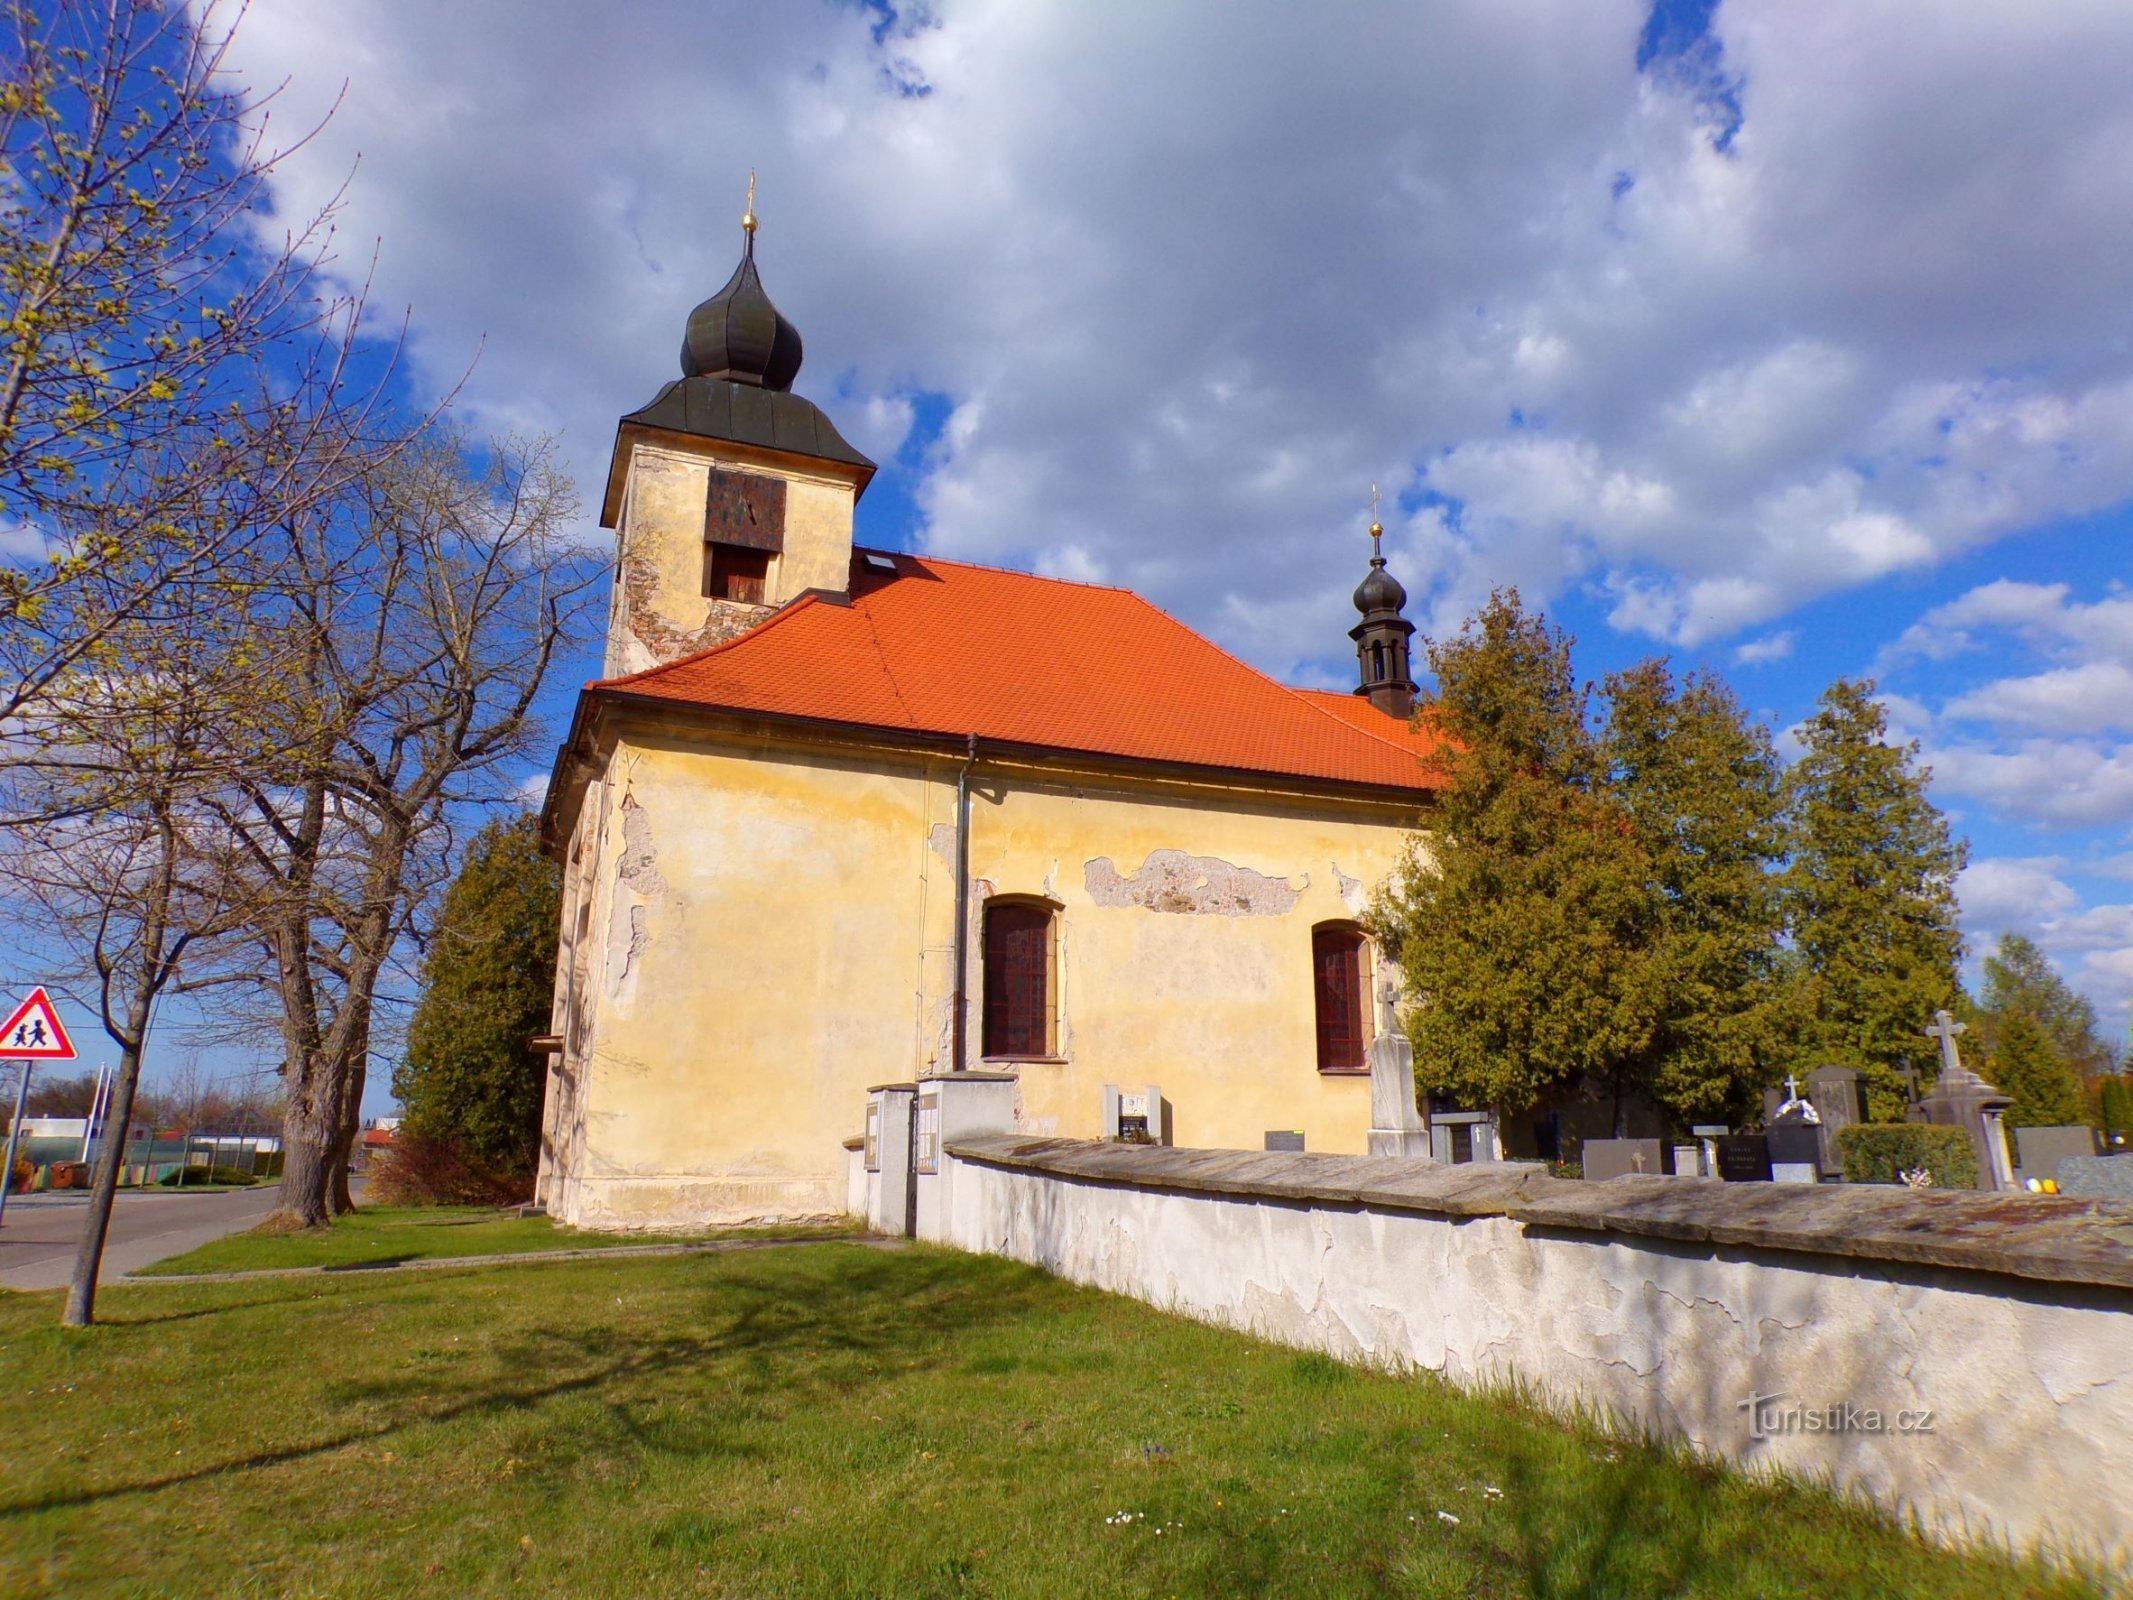 Cerkev sv. Janeza Nepomuškega v Lány na Důlk (Pardubice, 23.4.2022. XNUMX. XNUMX)